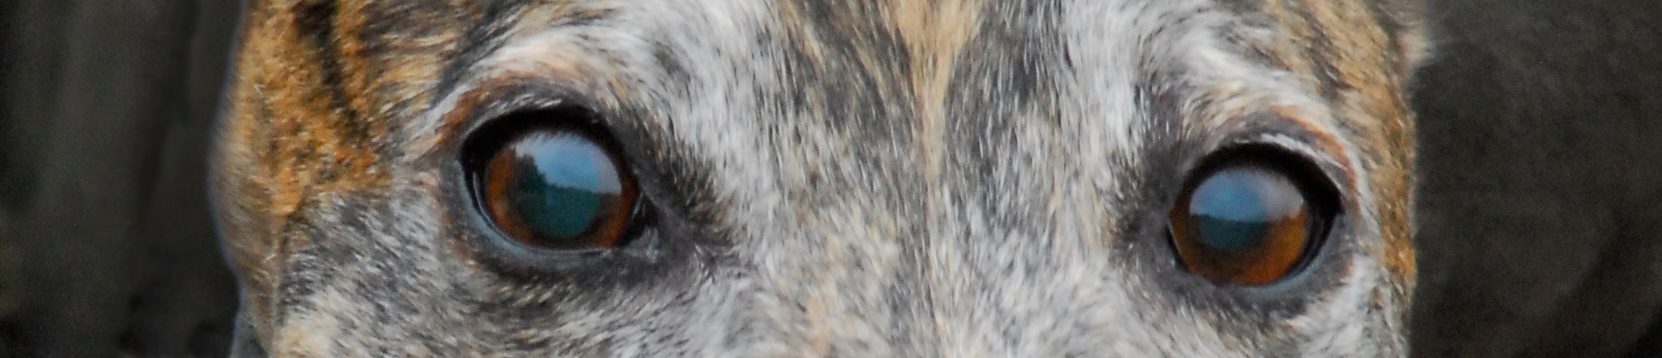 About Greyhound Crossroads Greyhound Eyes